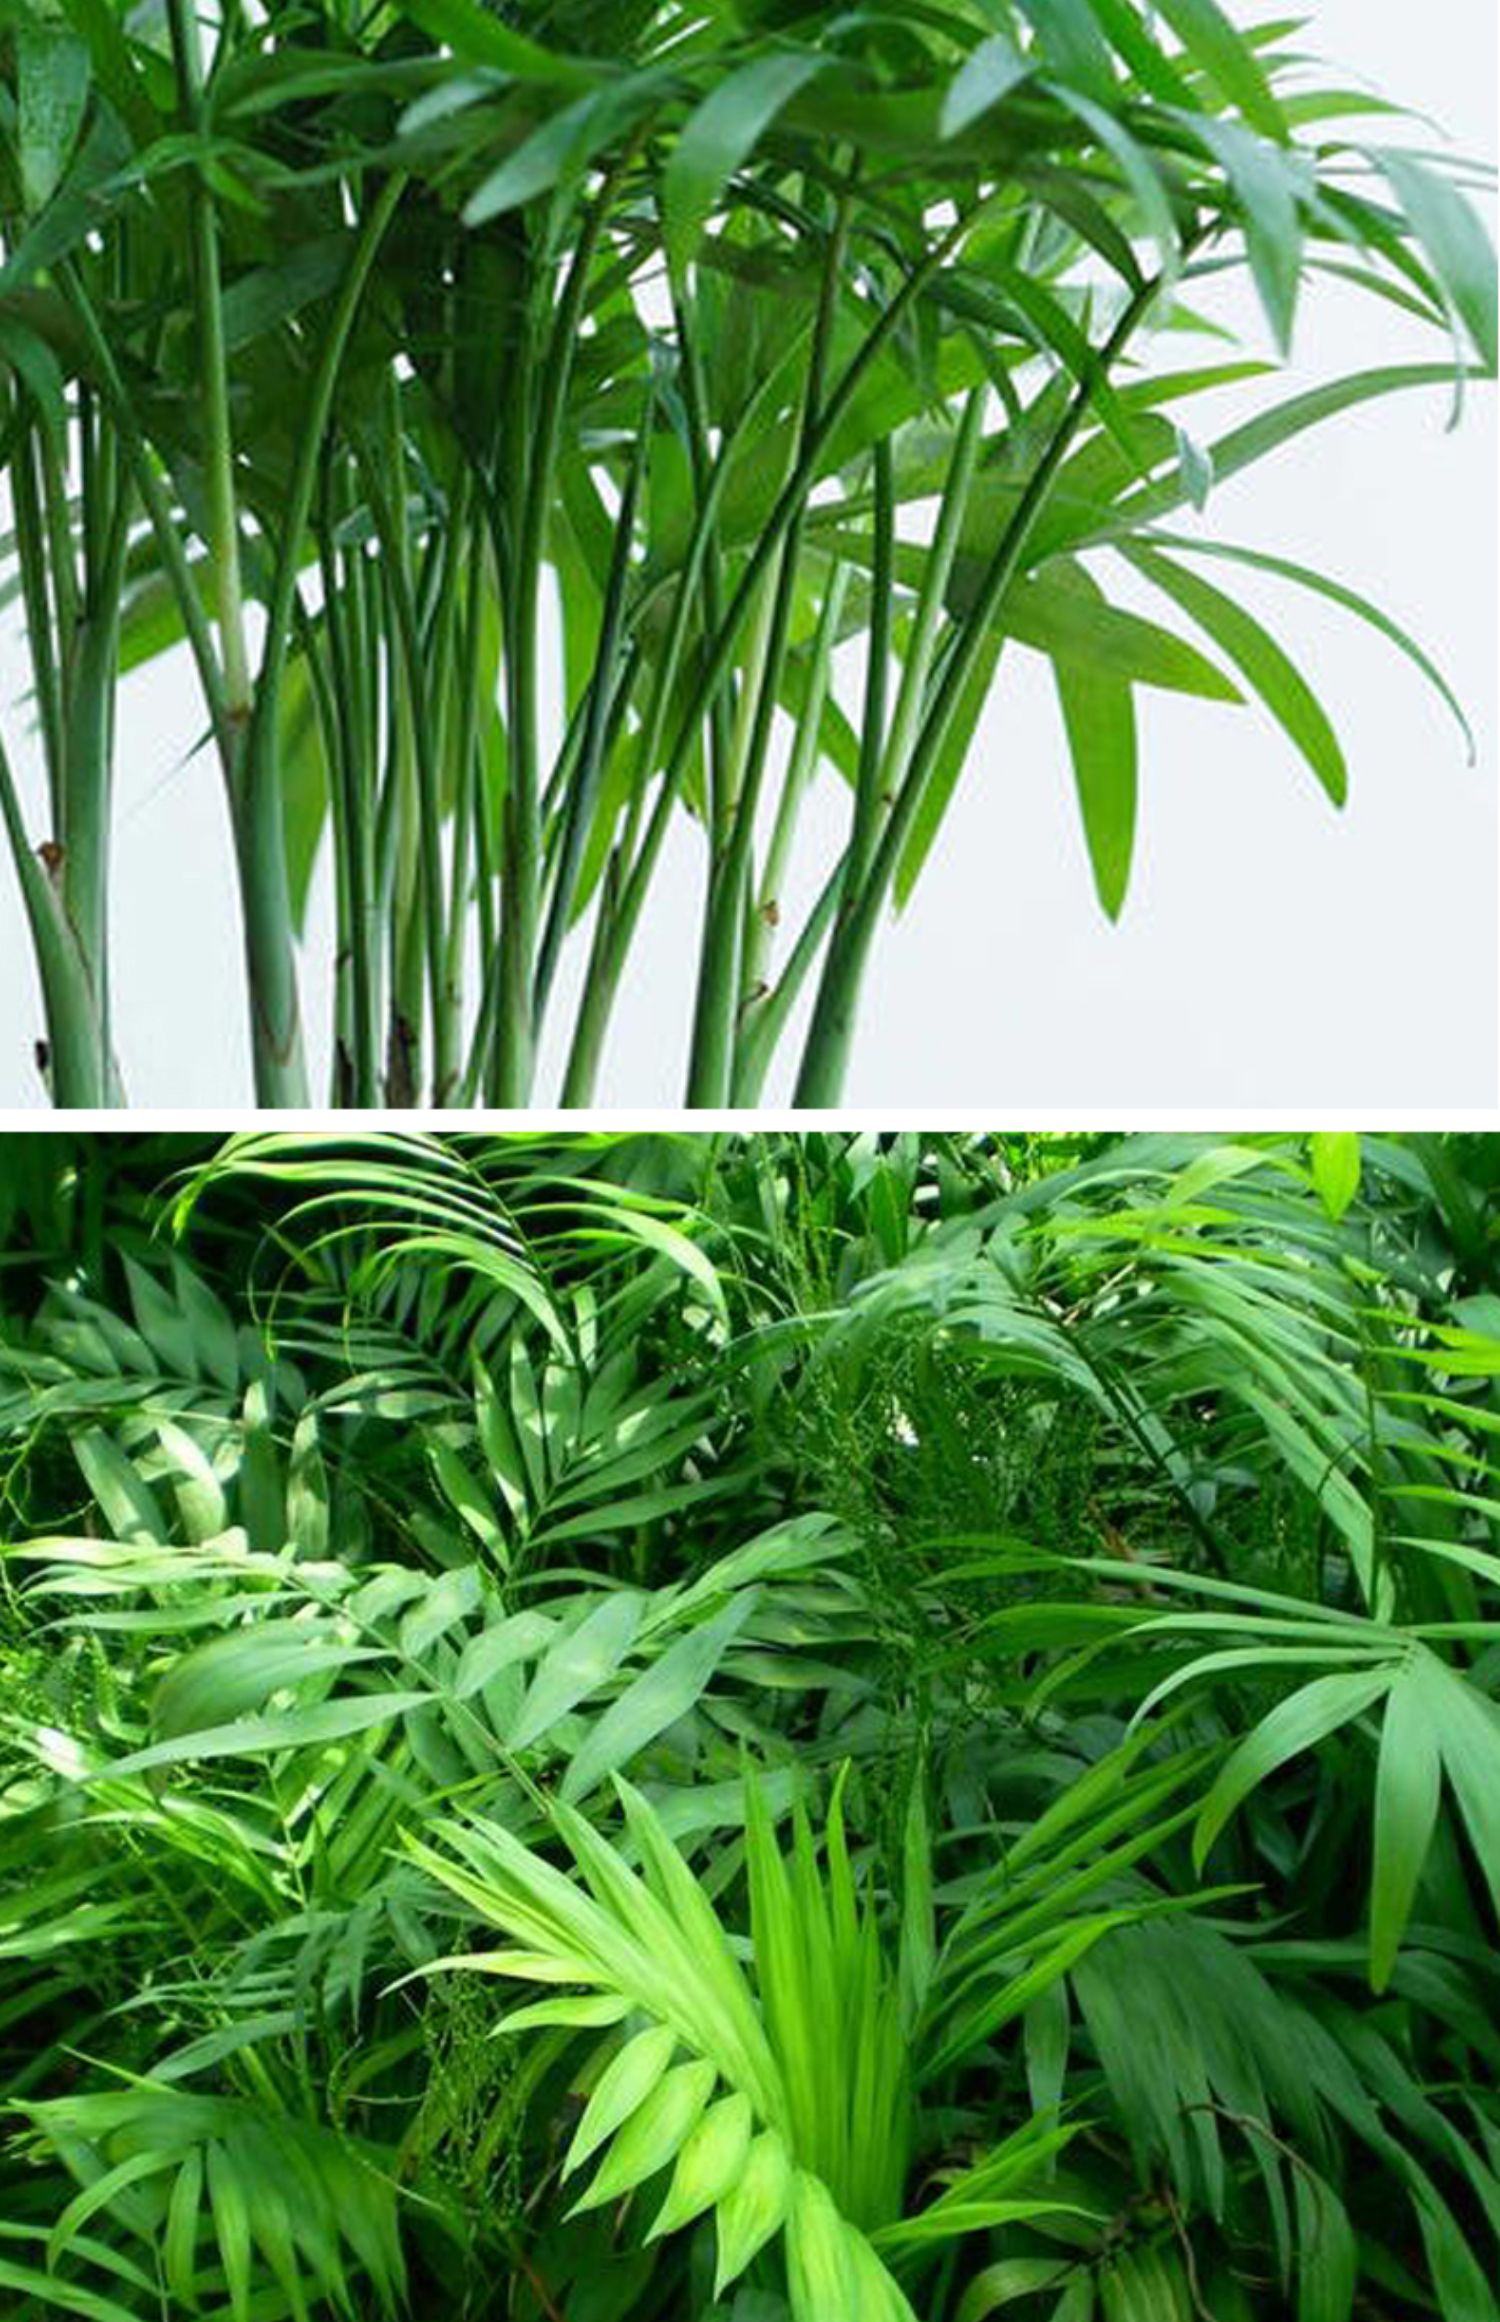 袖珍椰子盆栽室内四季常青好养植物办公室耐荫耐寒绿植110原盆袖珍